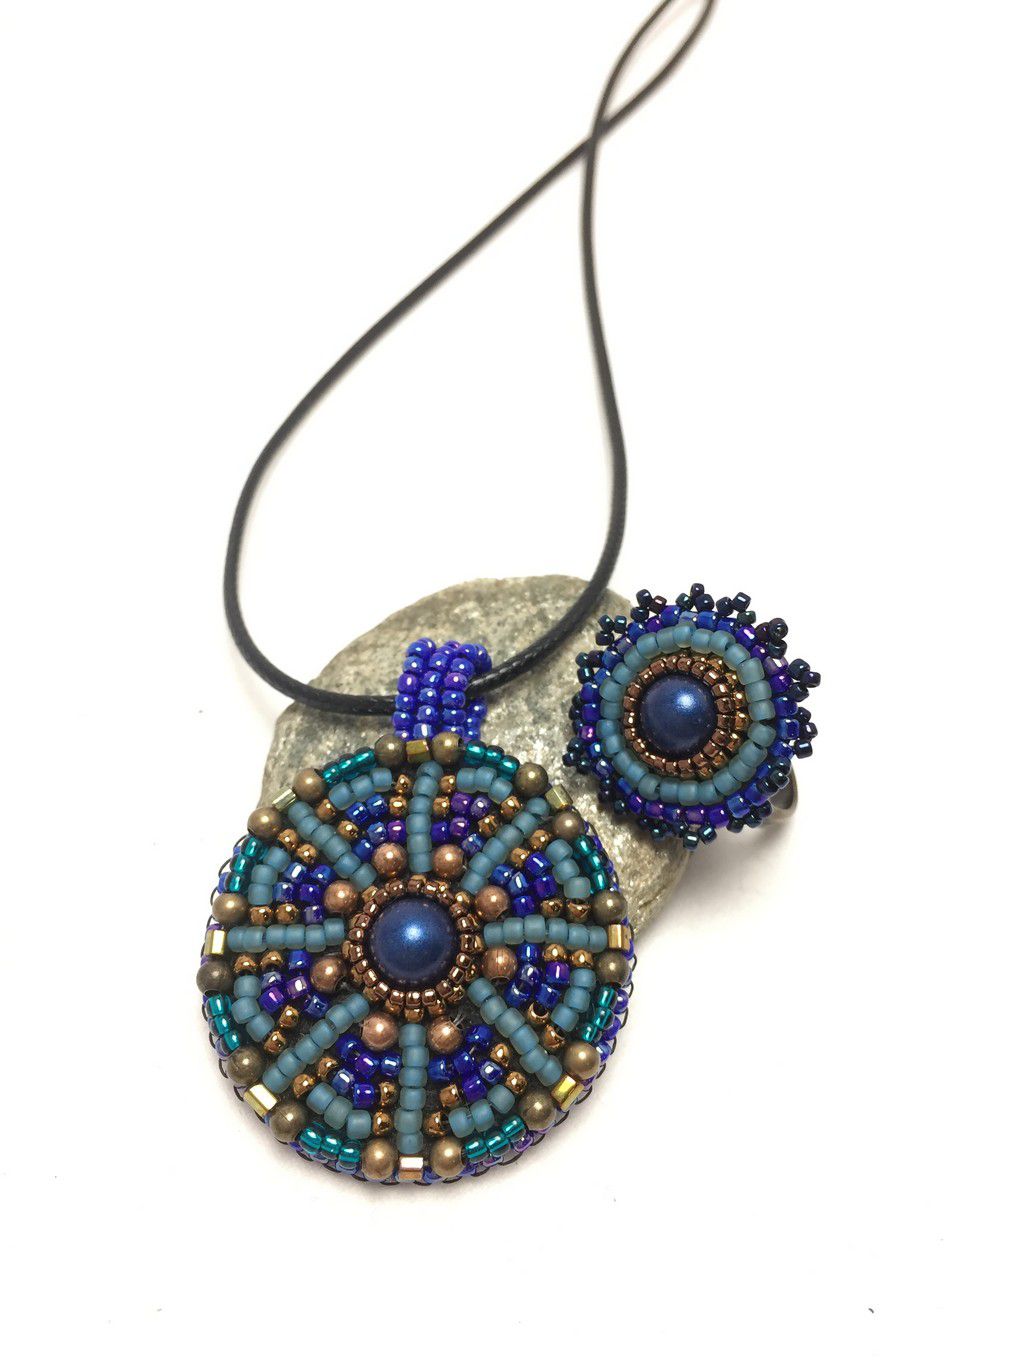 Mandala pendant necklace and ring set